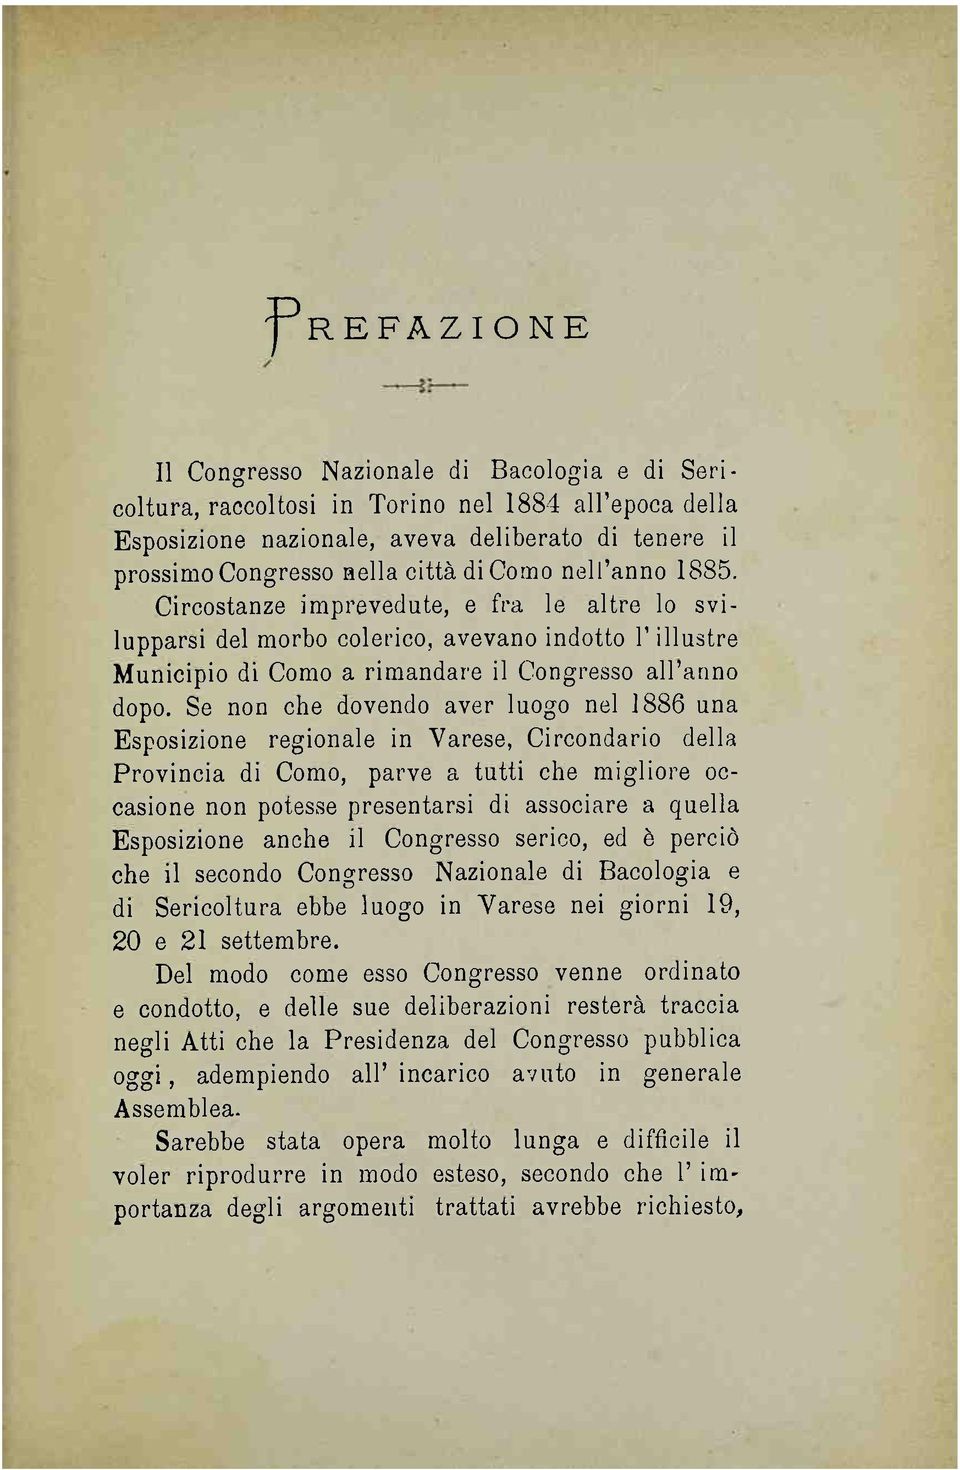 Se non che dovendo aver luogo nel 1886 una Esposizione regionale in Varese, Circondario della Provincia di Como, parve a tutti che migliore occasione non potesse presentarsi di associare a quella